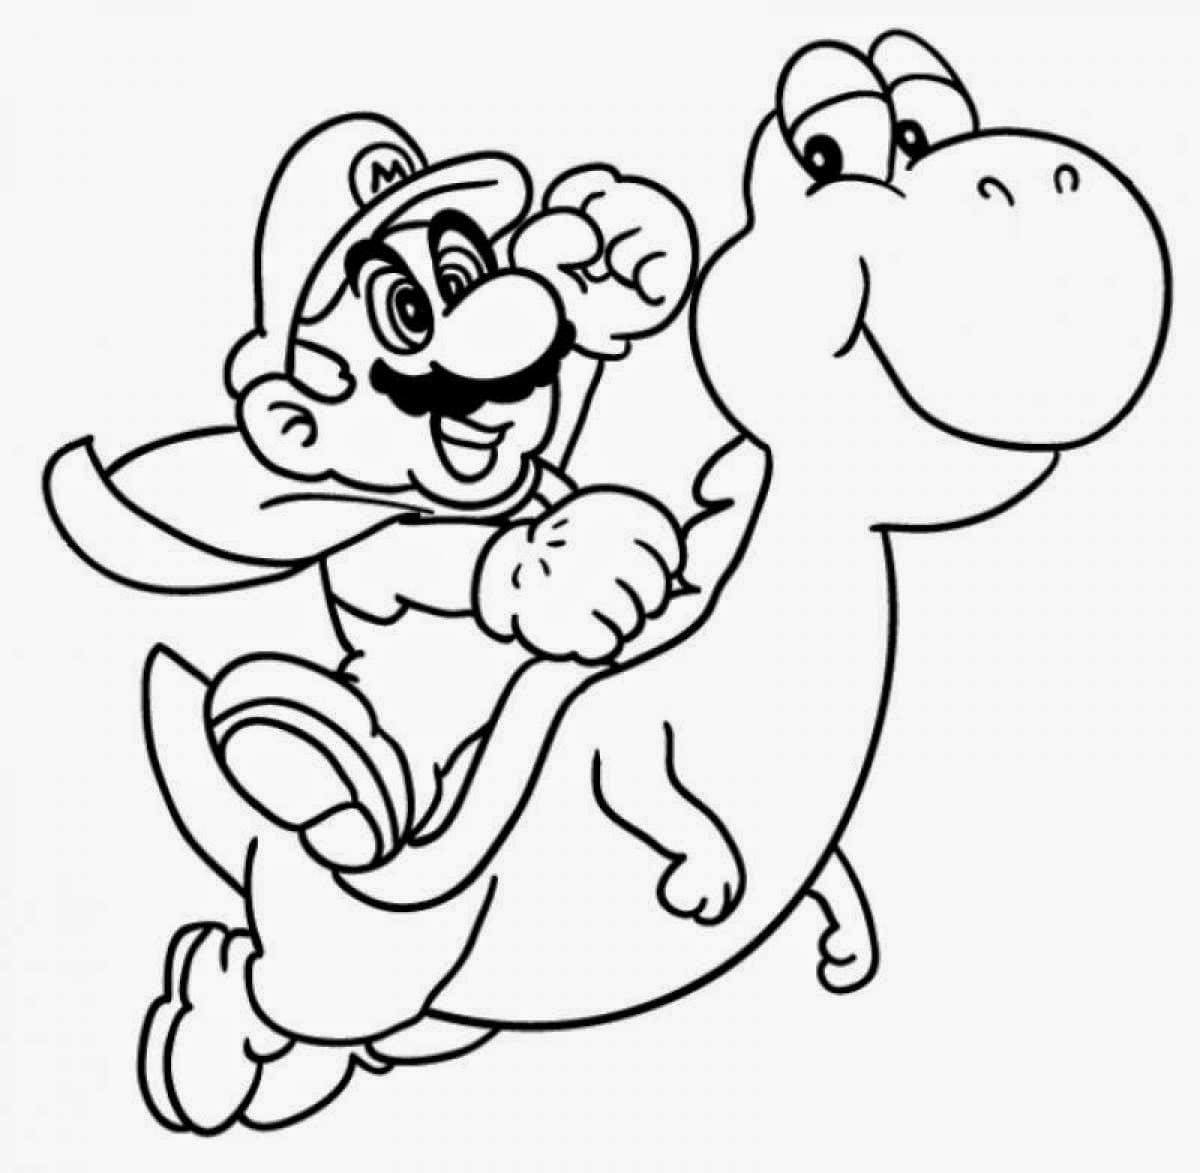 Dibujo 24 de Super Mario para imprimir y colorear